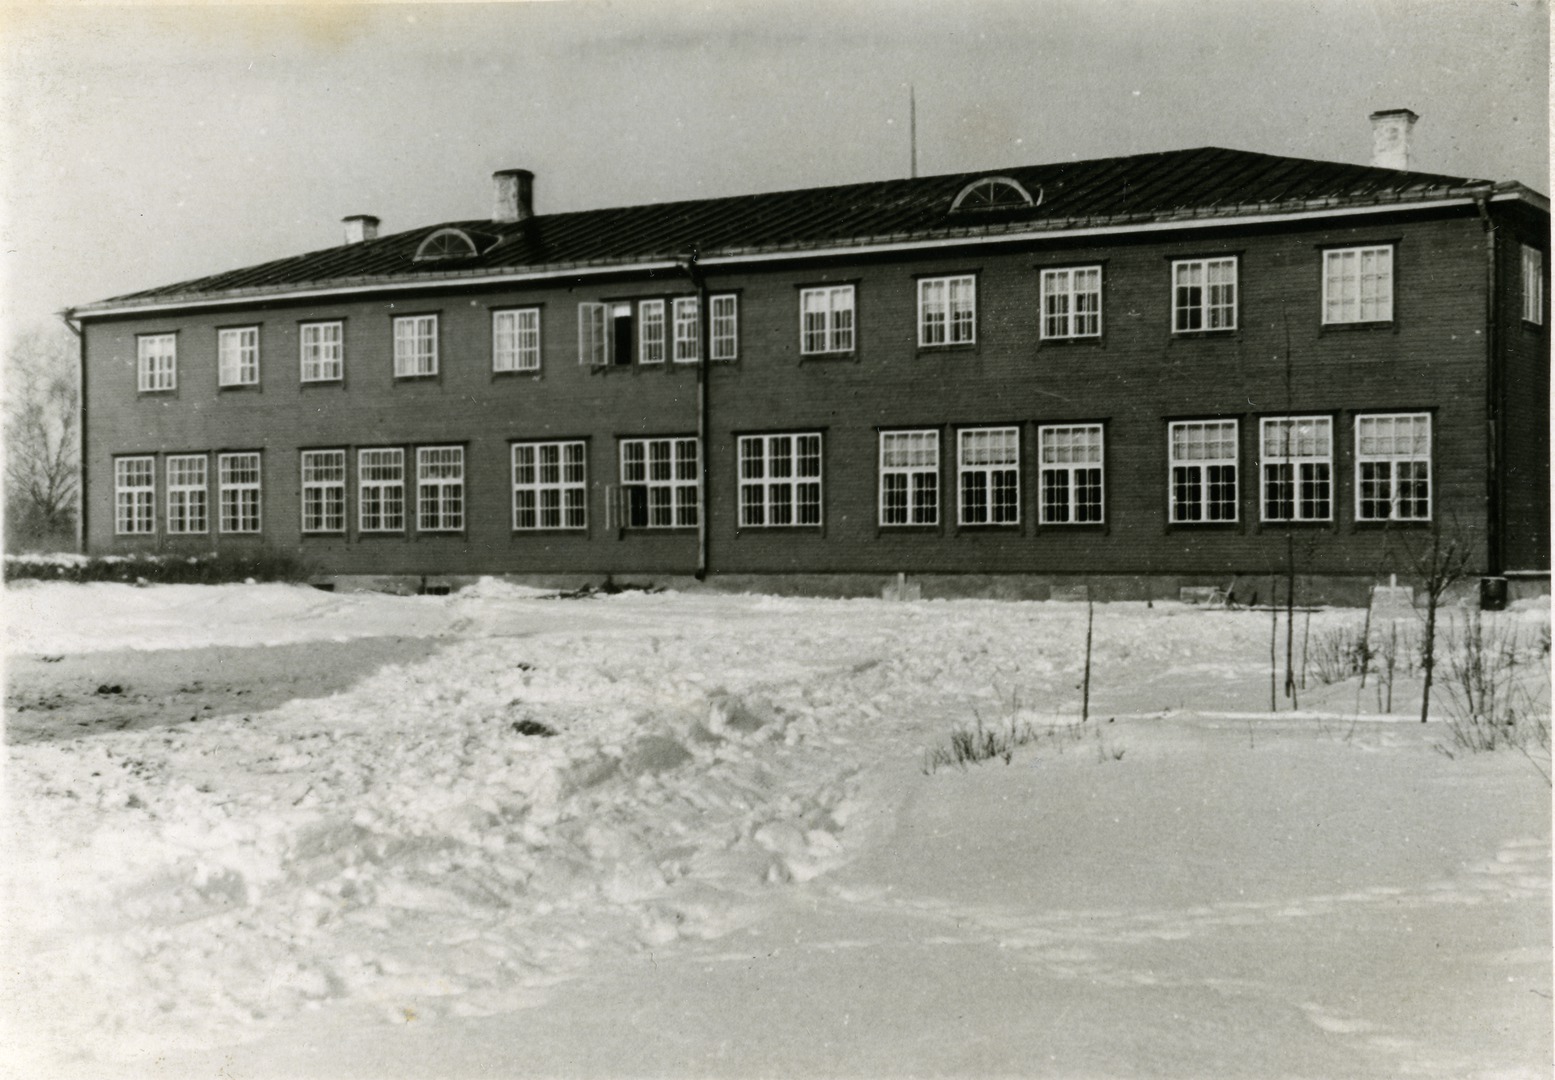 Lääne-Viru county Võifamily 8-kl School building